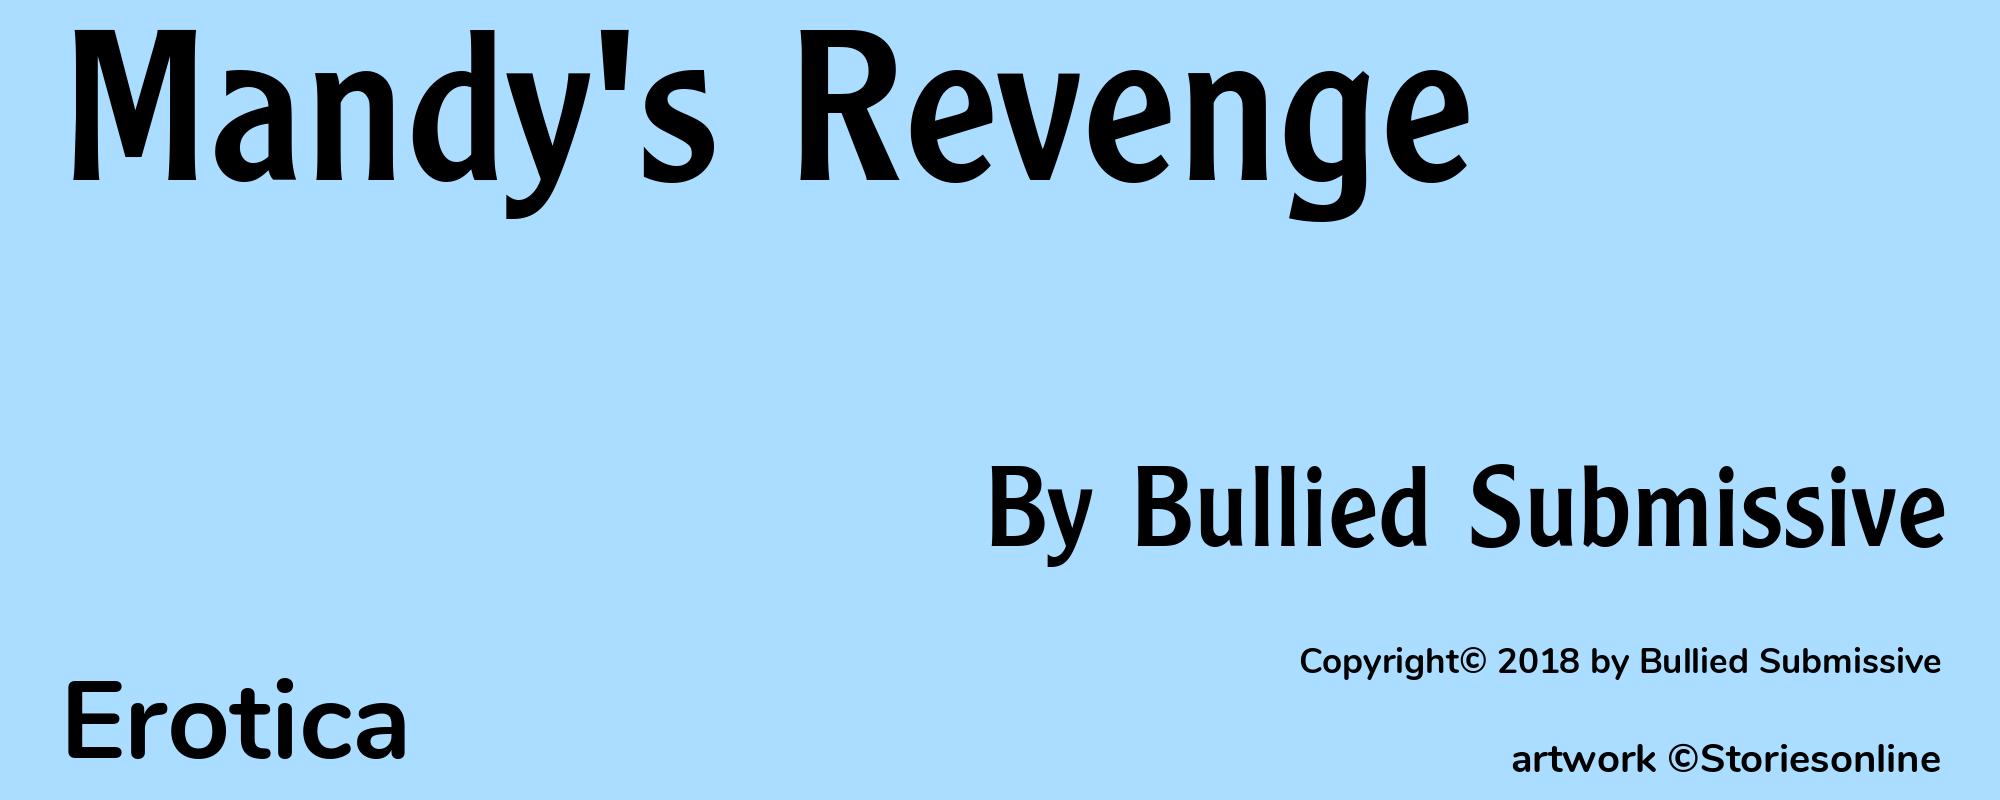 Mandy's Revenge - Cover